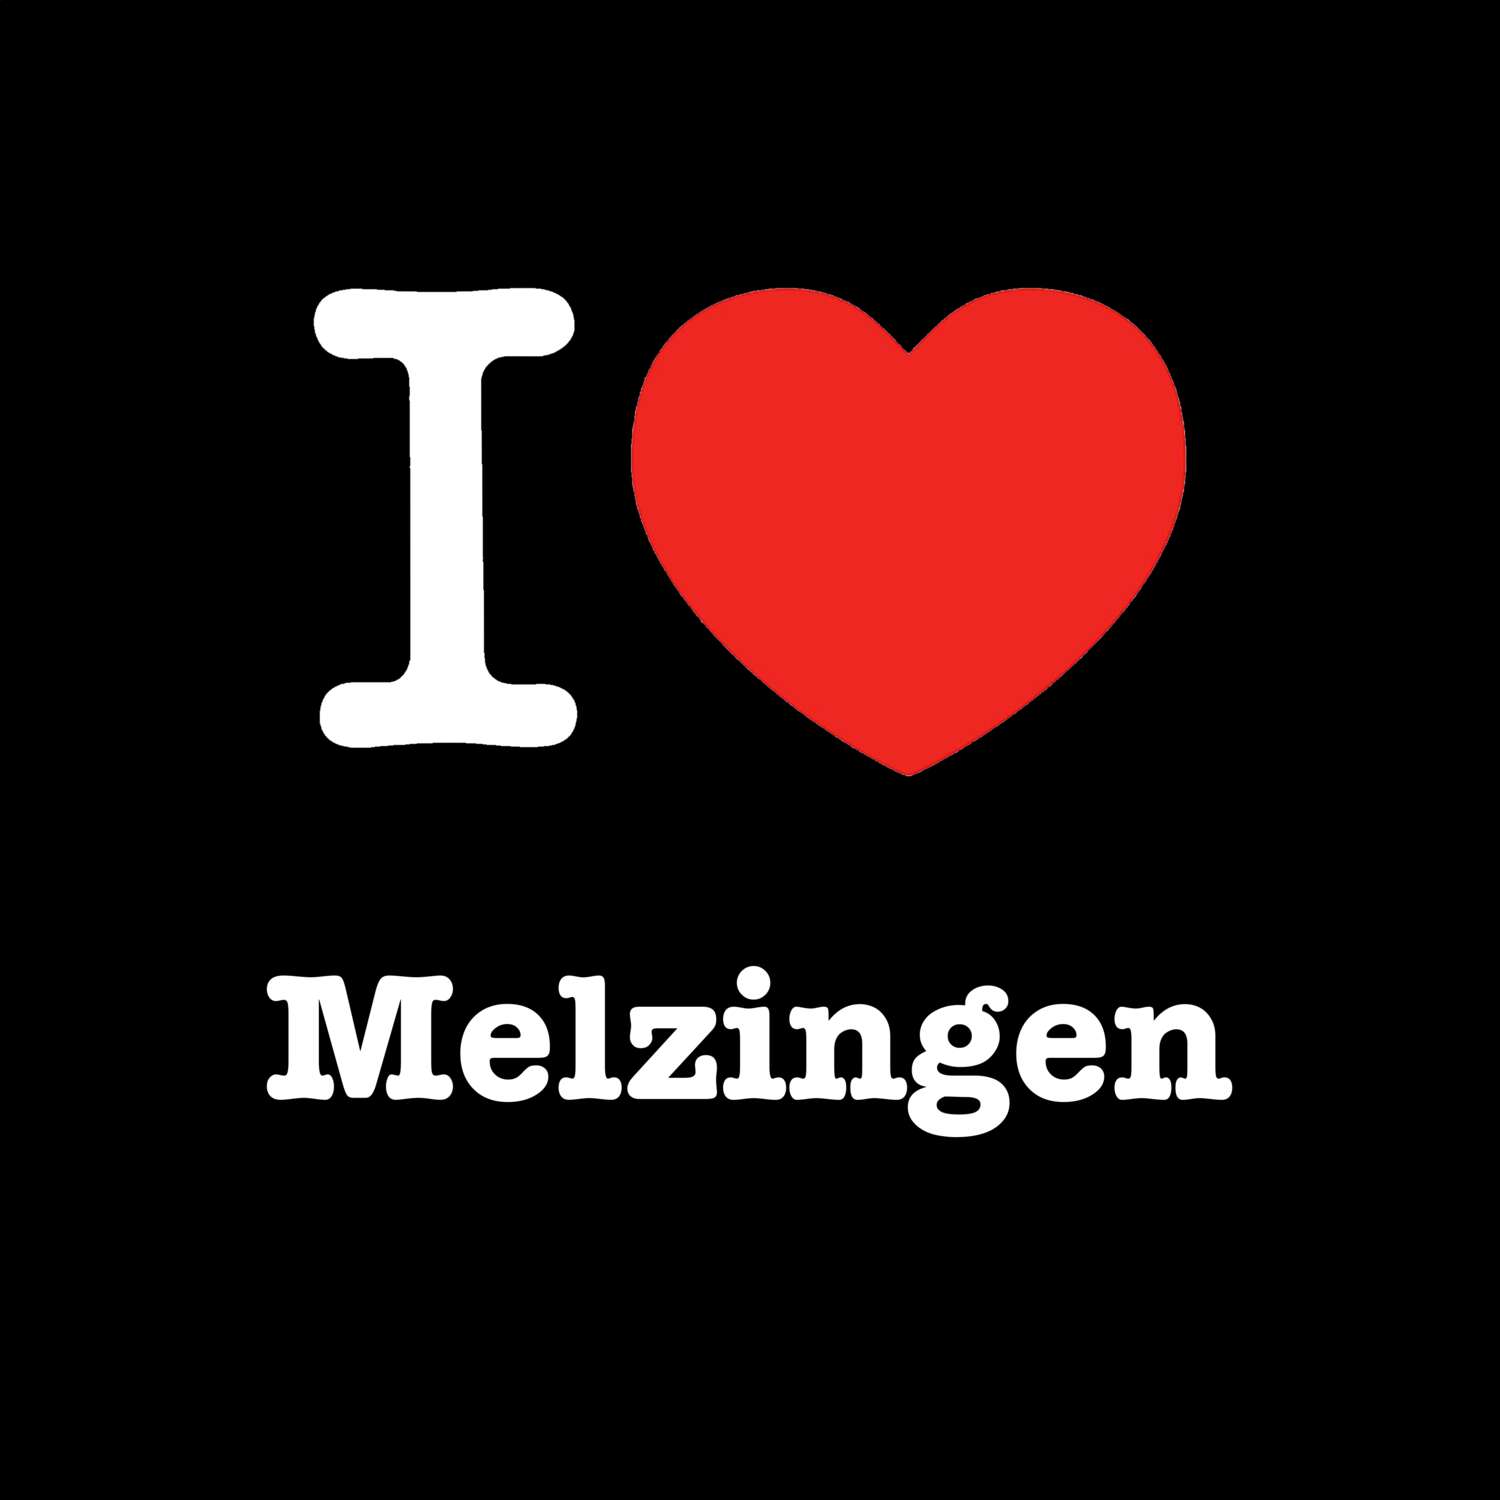 Melzingen T-Shirt »I love«